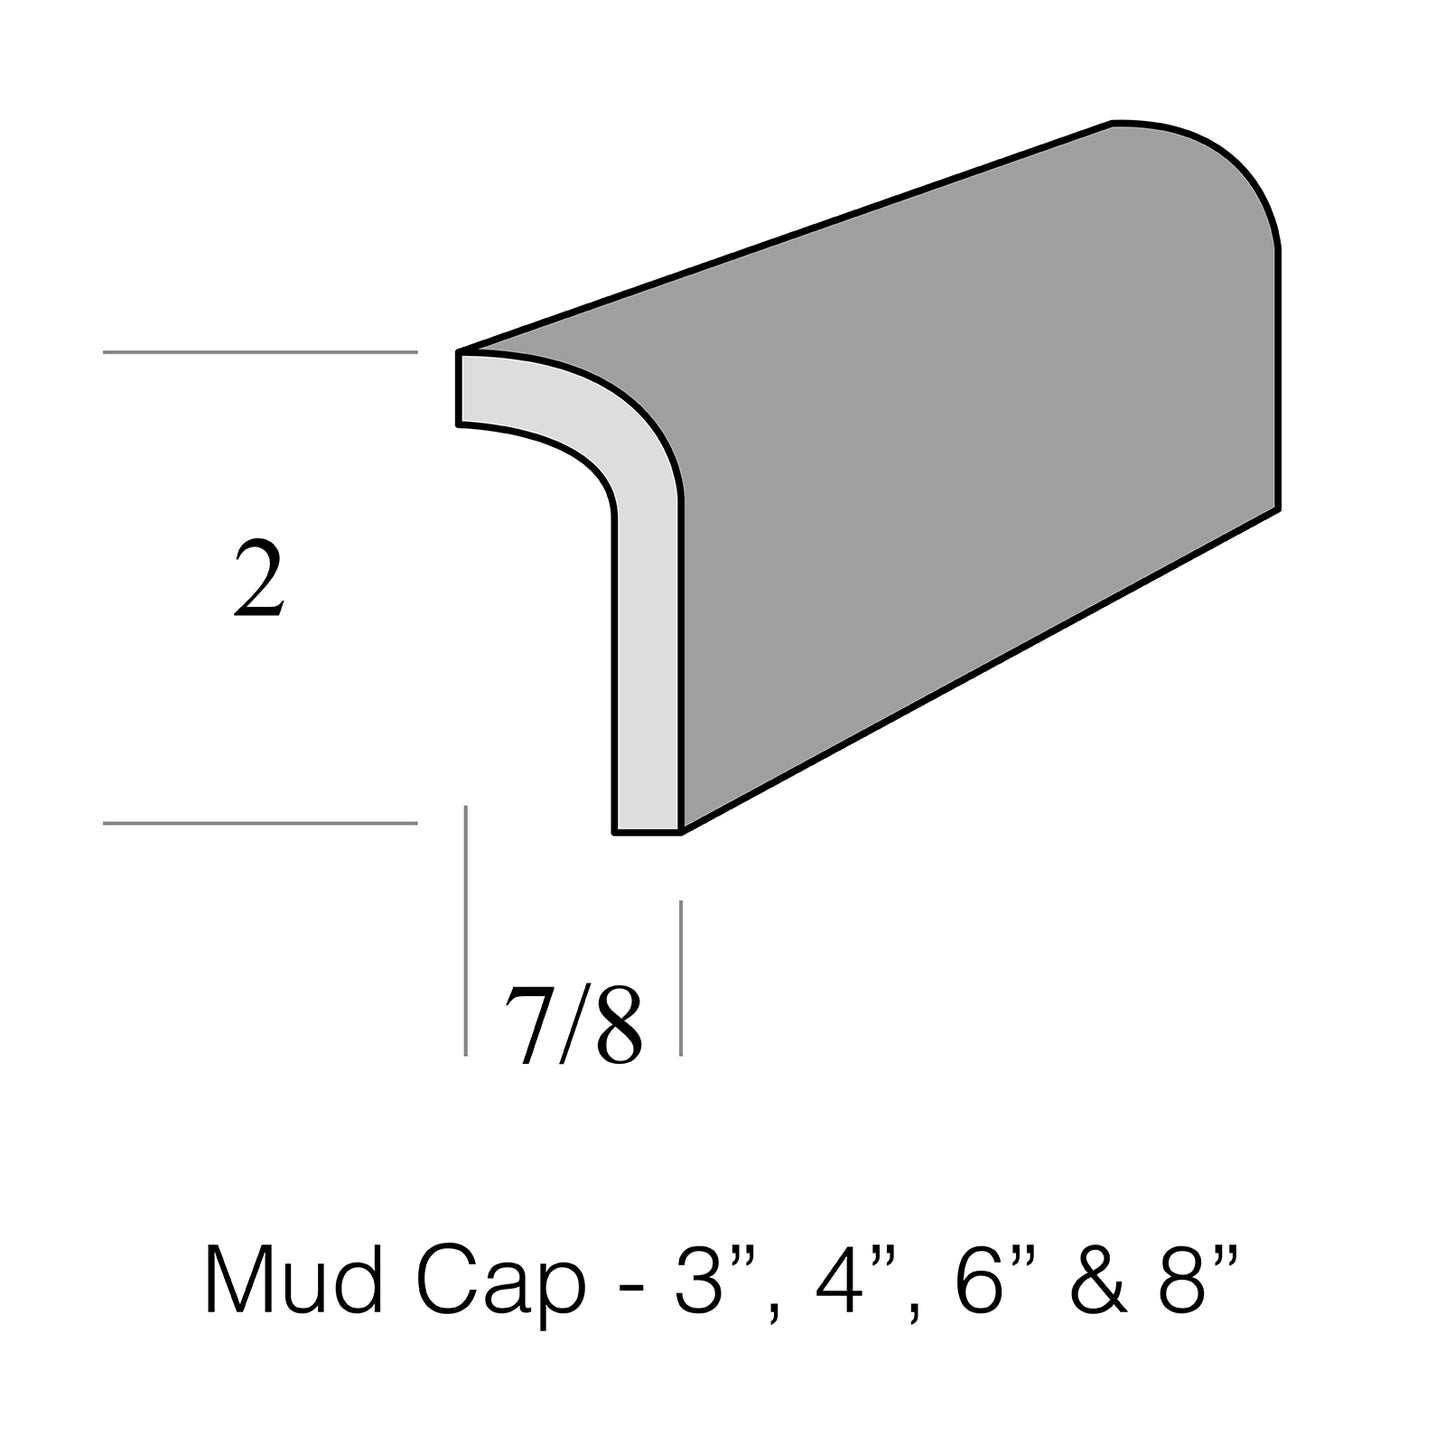 Mud Cap 8"